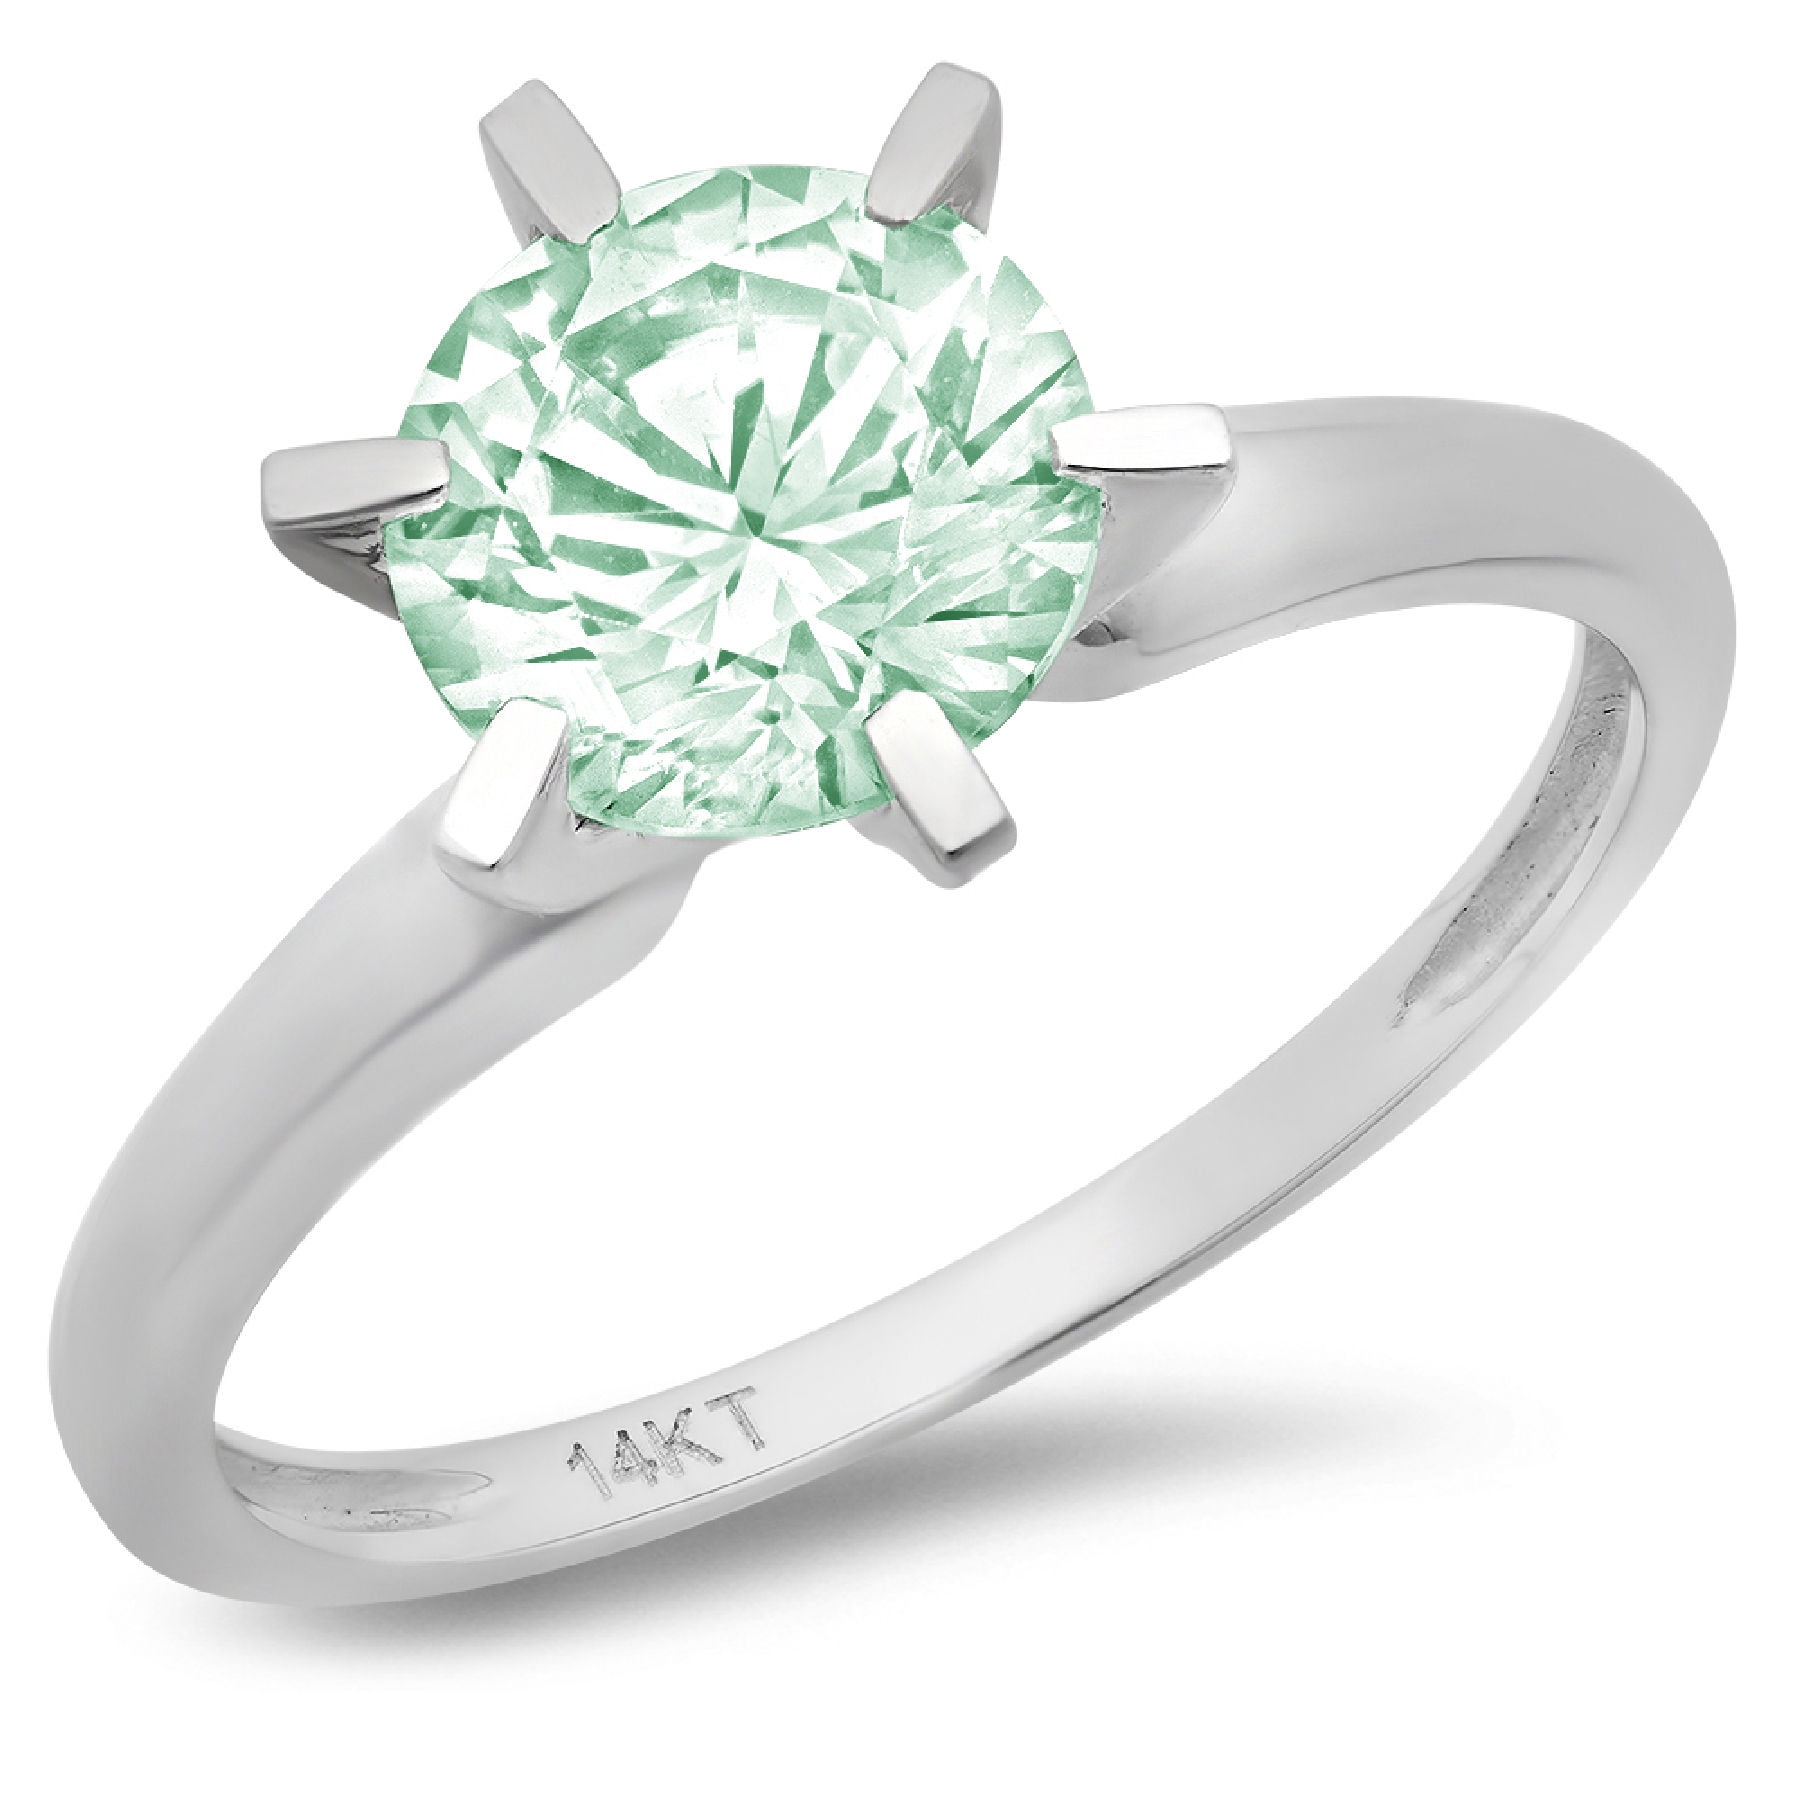 Details about   1.66 Princess Champagne CZ Statement Bridal Wedding Designer Ring 14k Rose Gold 